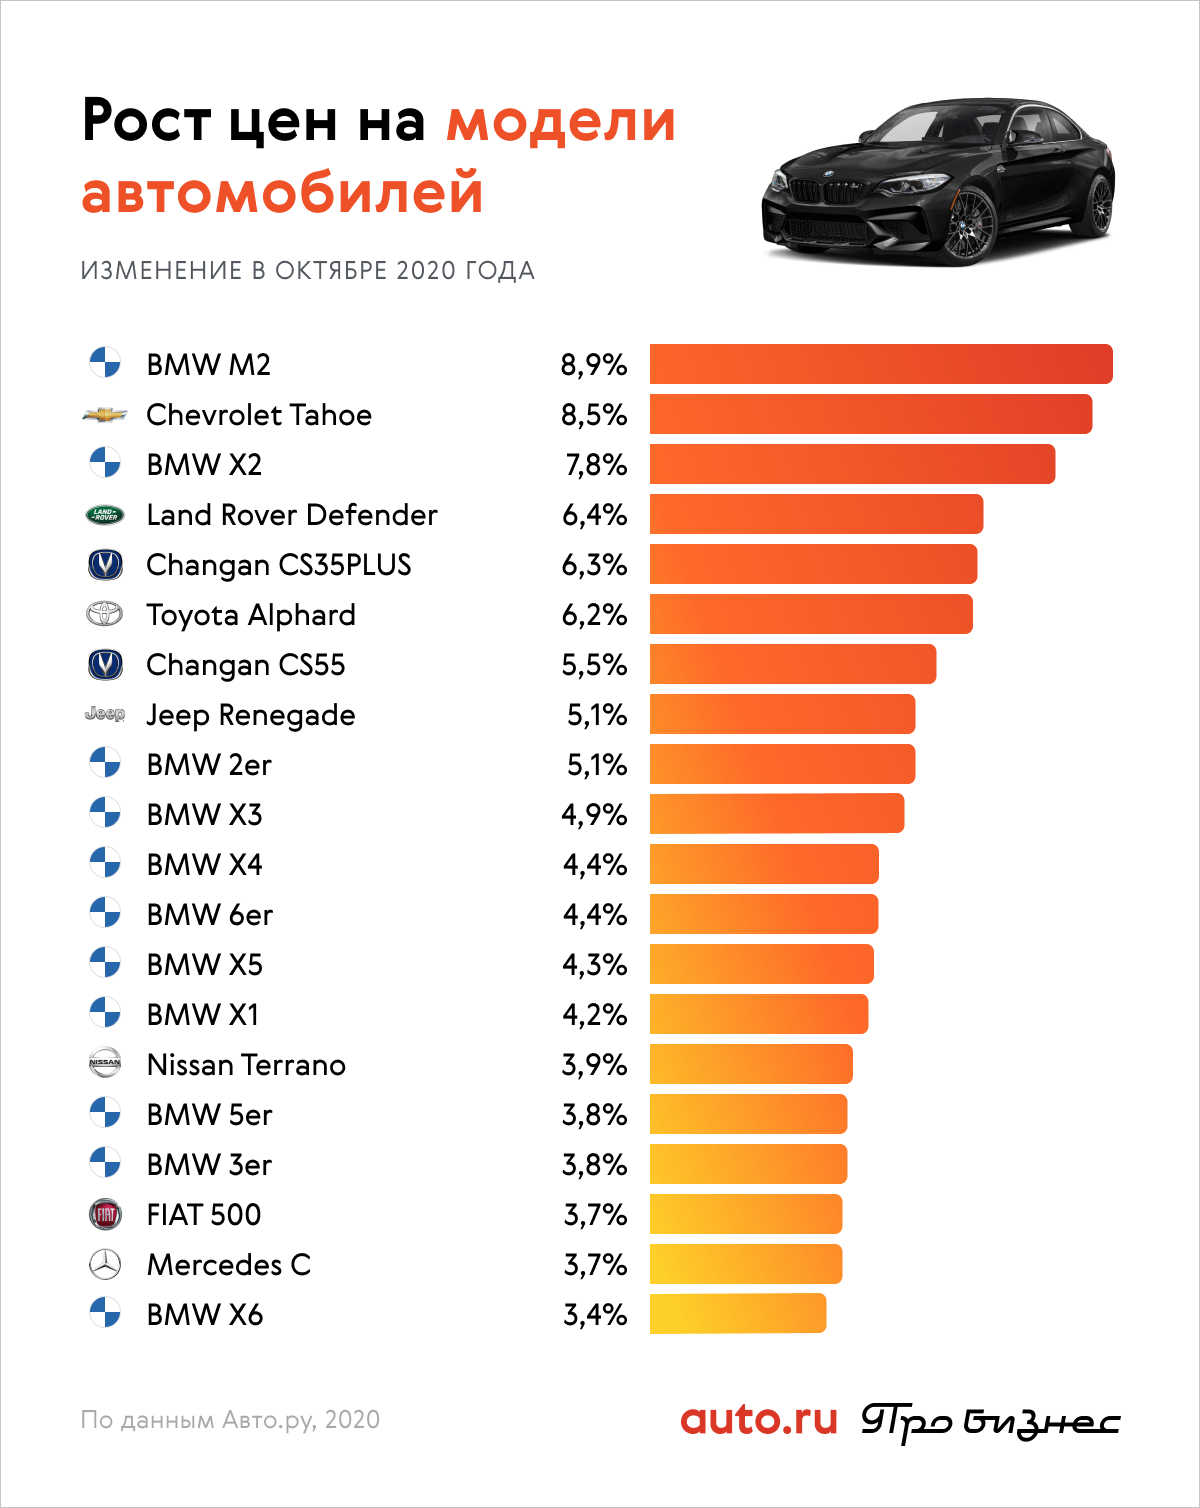 Машины Фото И Цены В России